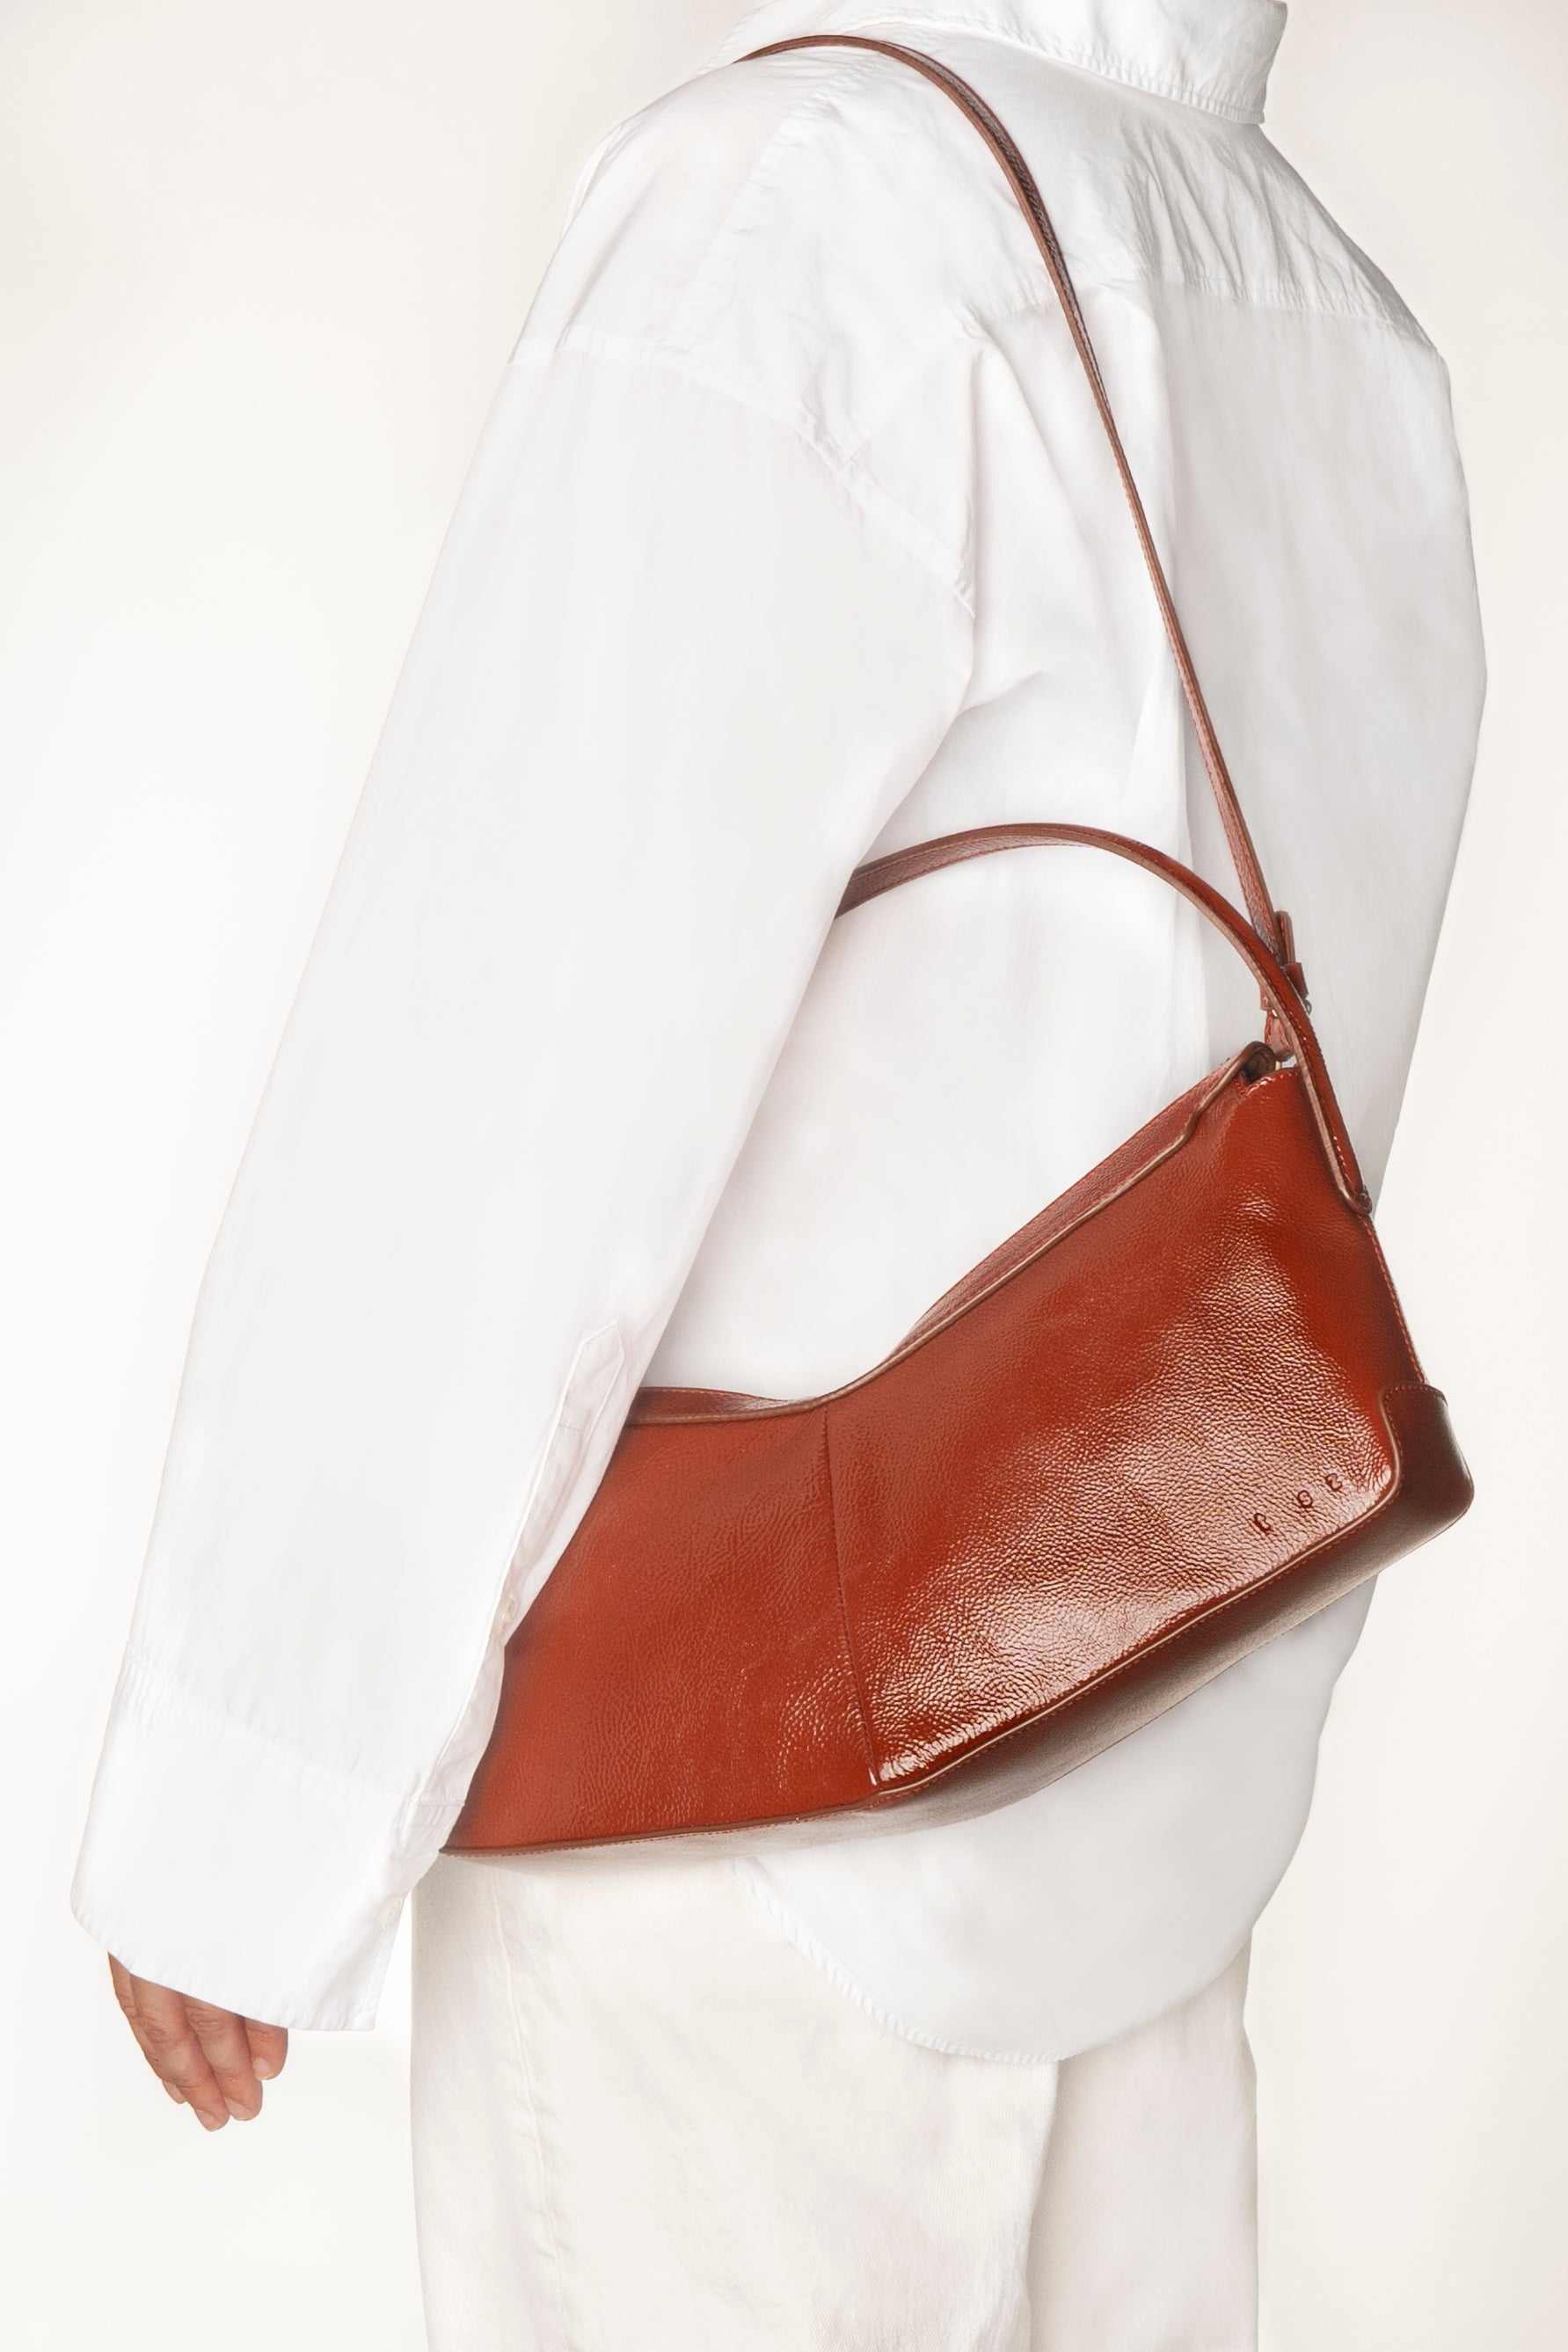 the V baguette glossy brunette shoulder bag